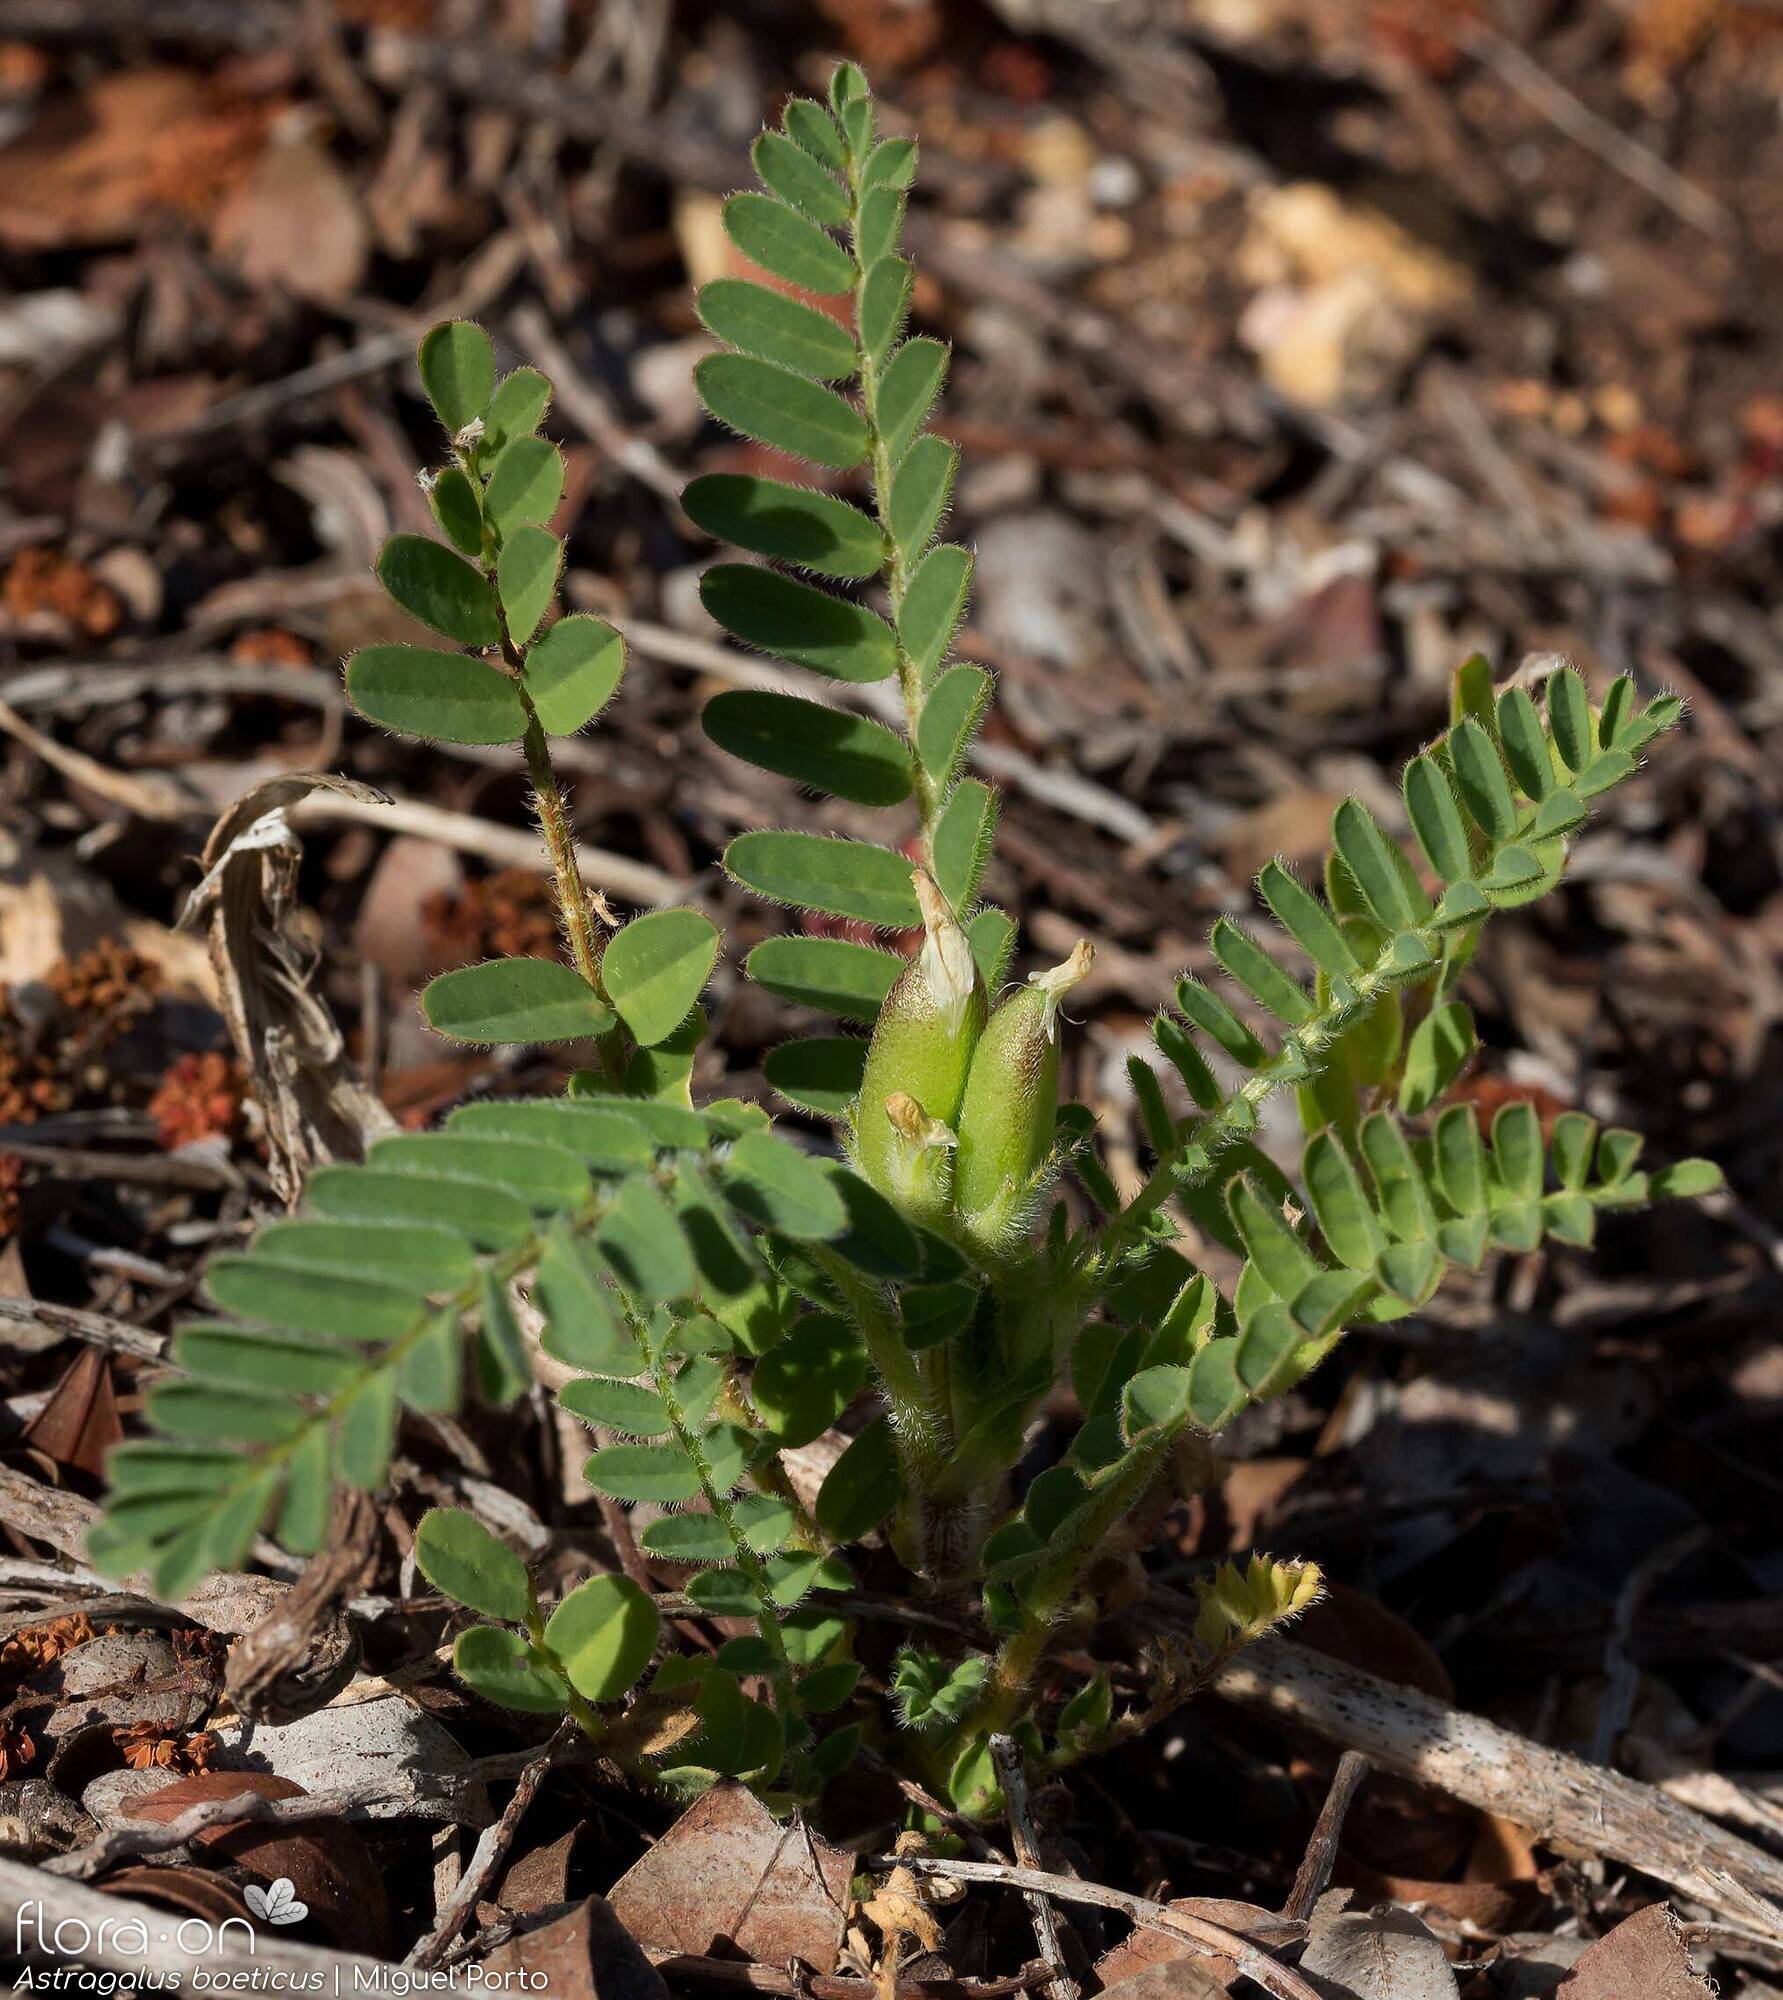 Astragalus boeticus - Hábito | Miguel Porto; CC BY-NC 4.0